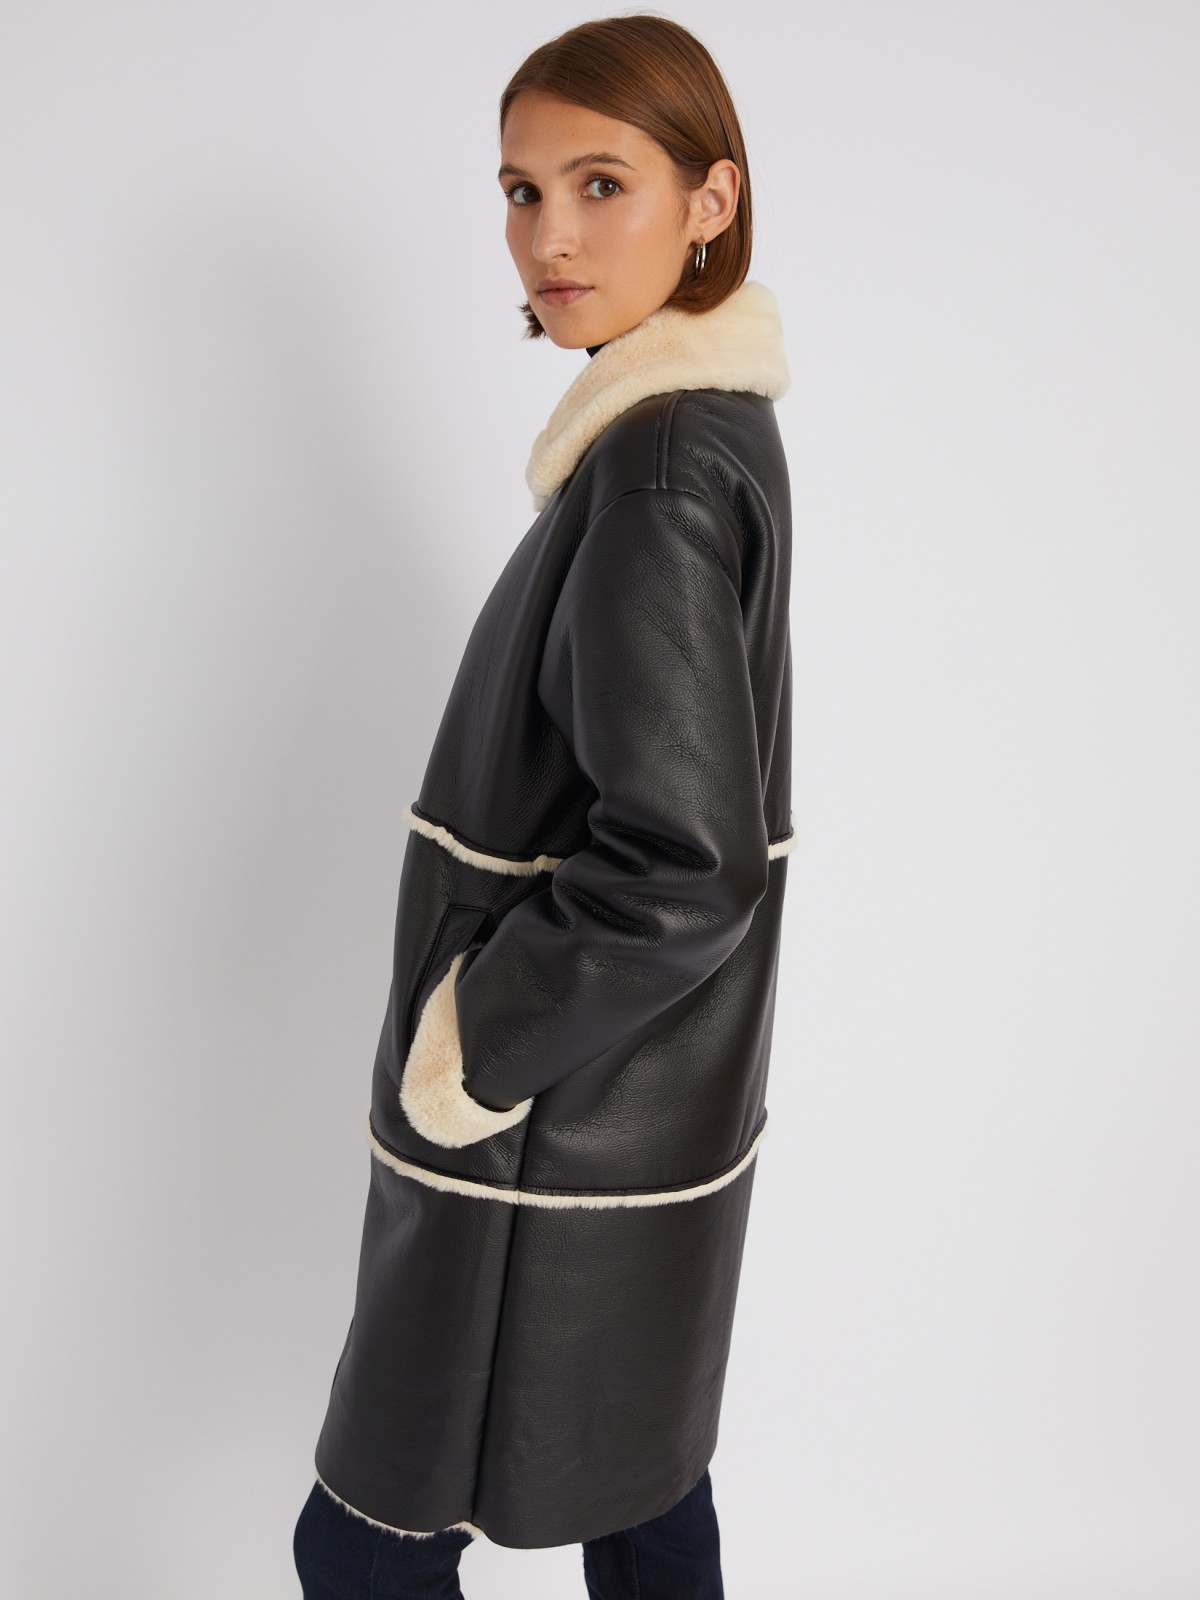 Длинное тёплое пальто-дублёнка из экокожи с искусственным мехом по подкладке zolla 023335550084, цвет черный, размер M - фото 4